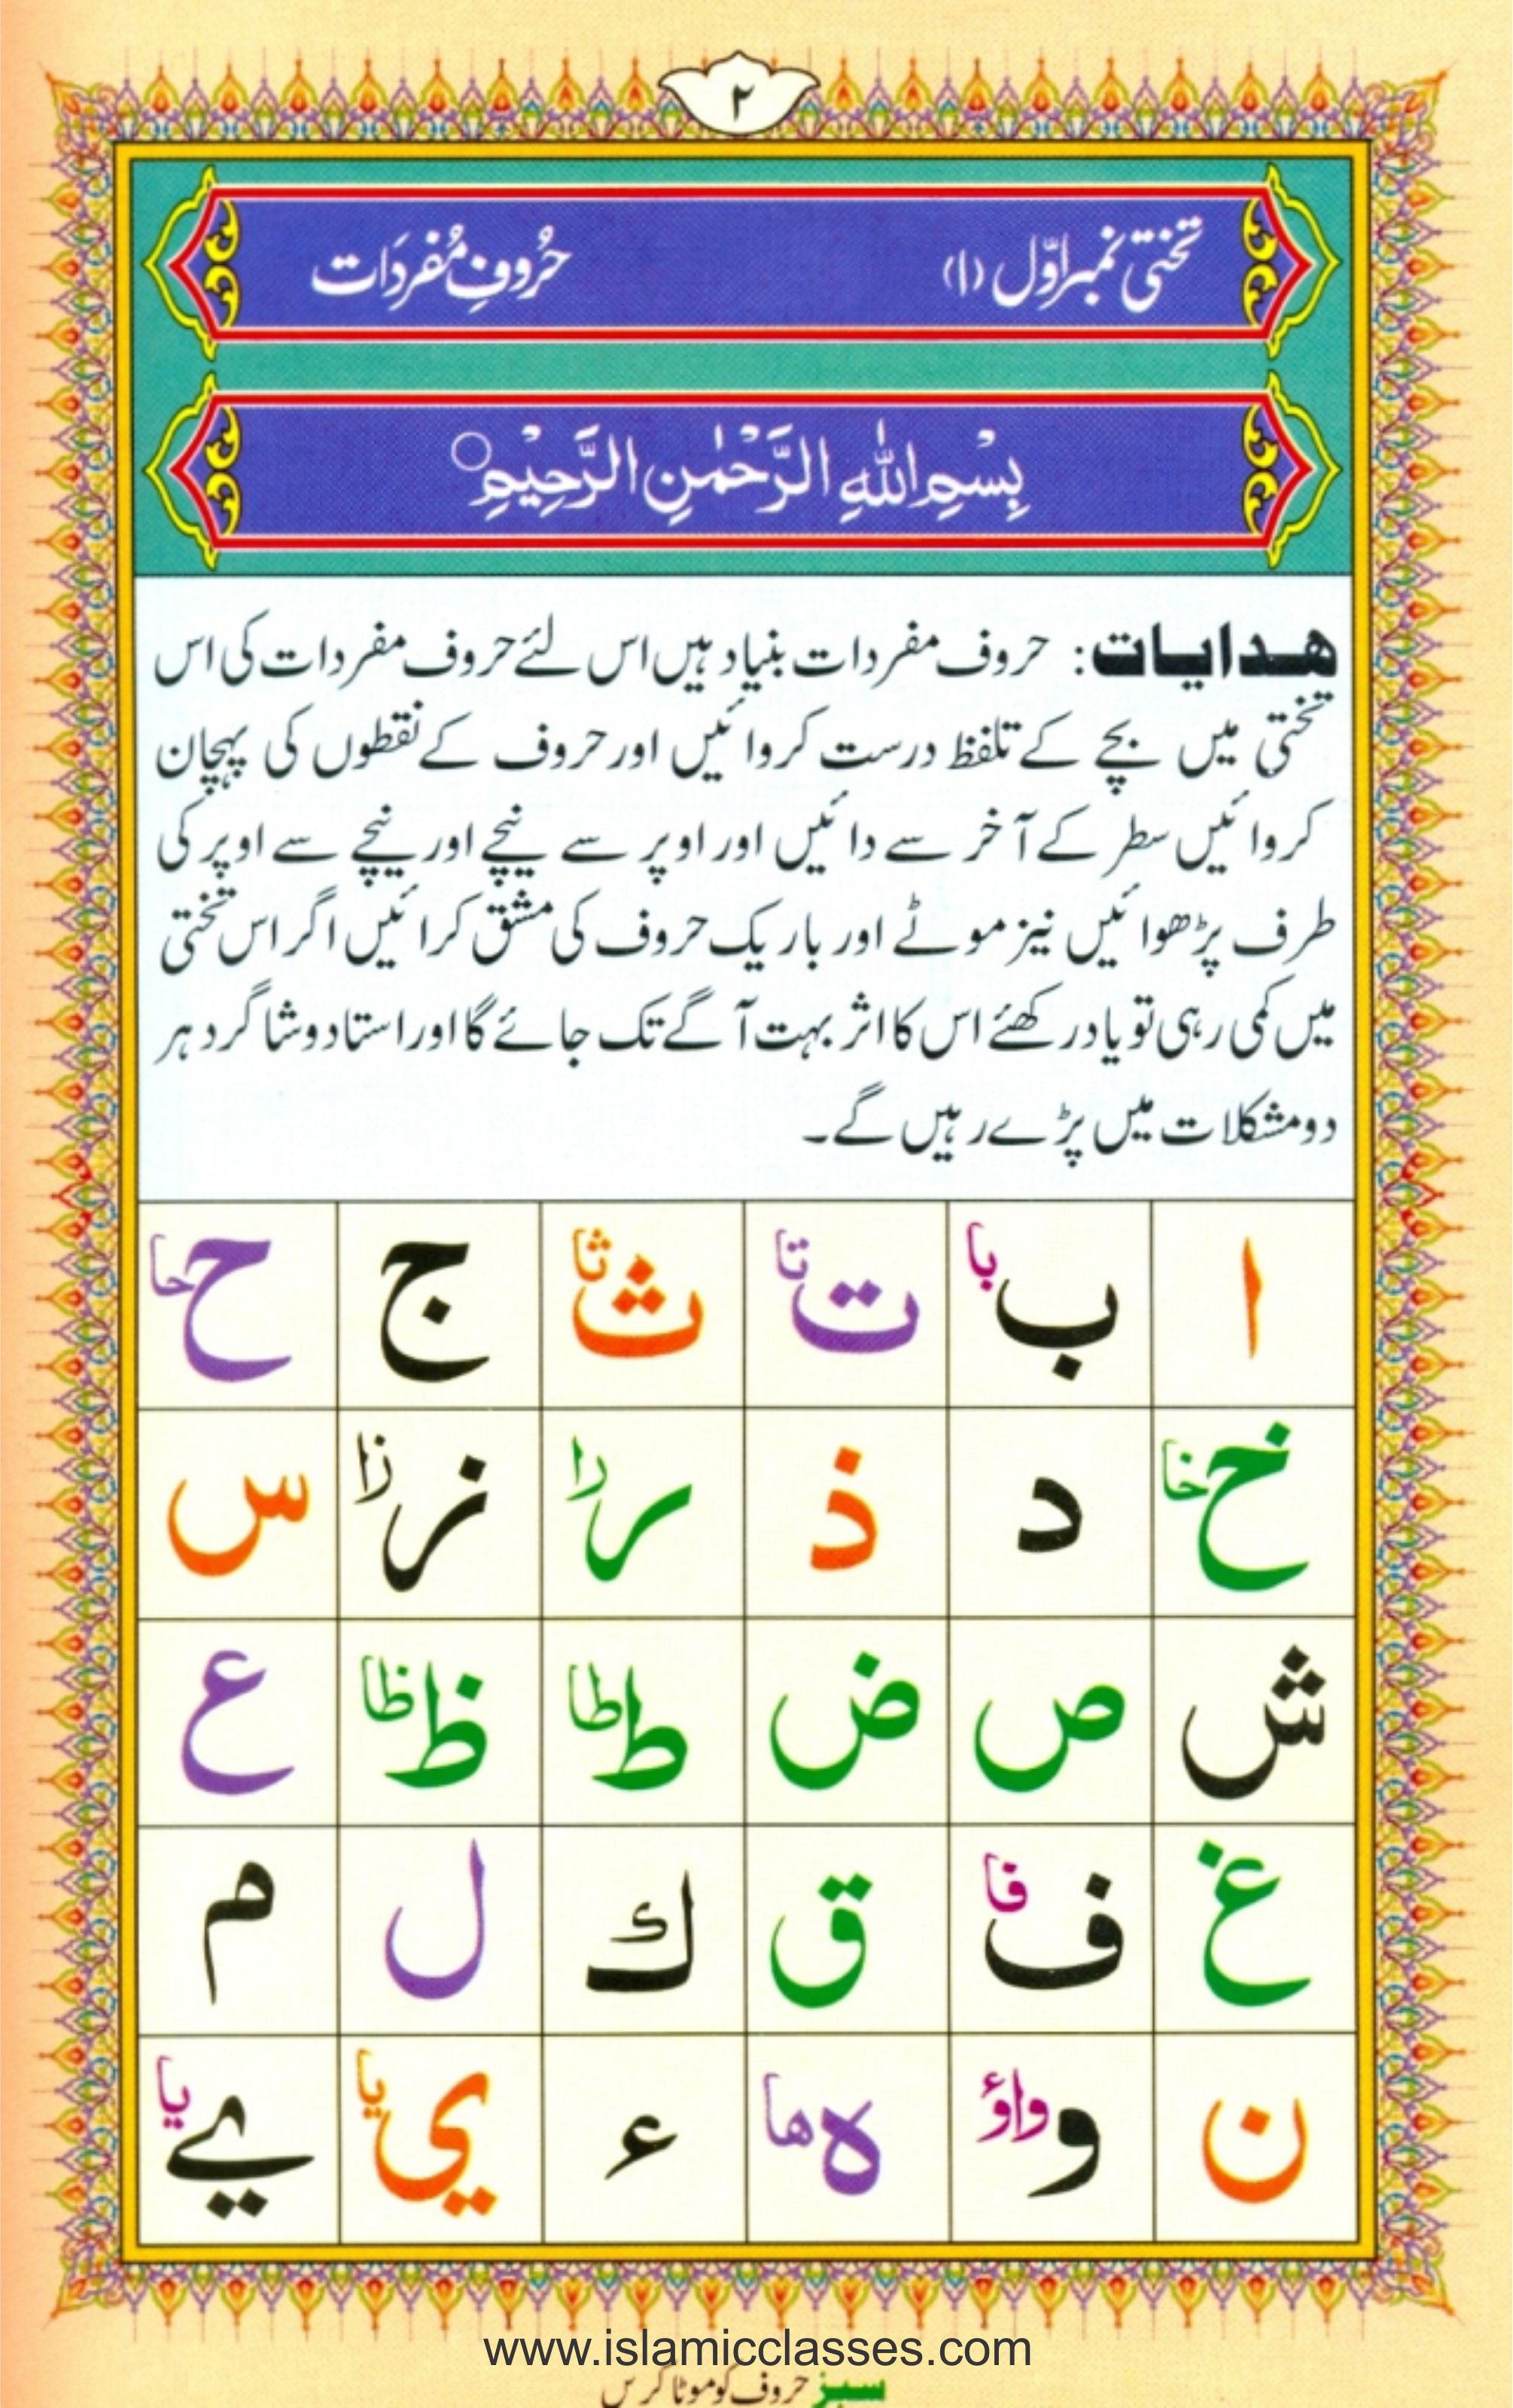 4 Qul With Urdu Translation Pdf 02